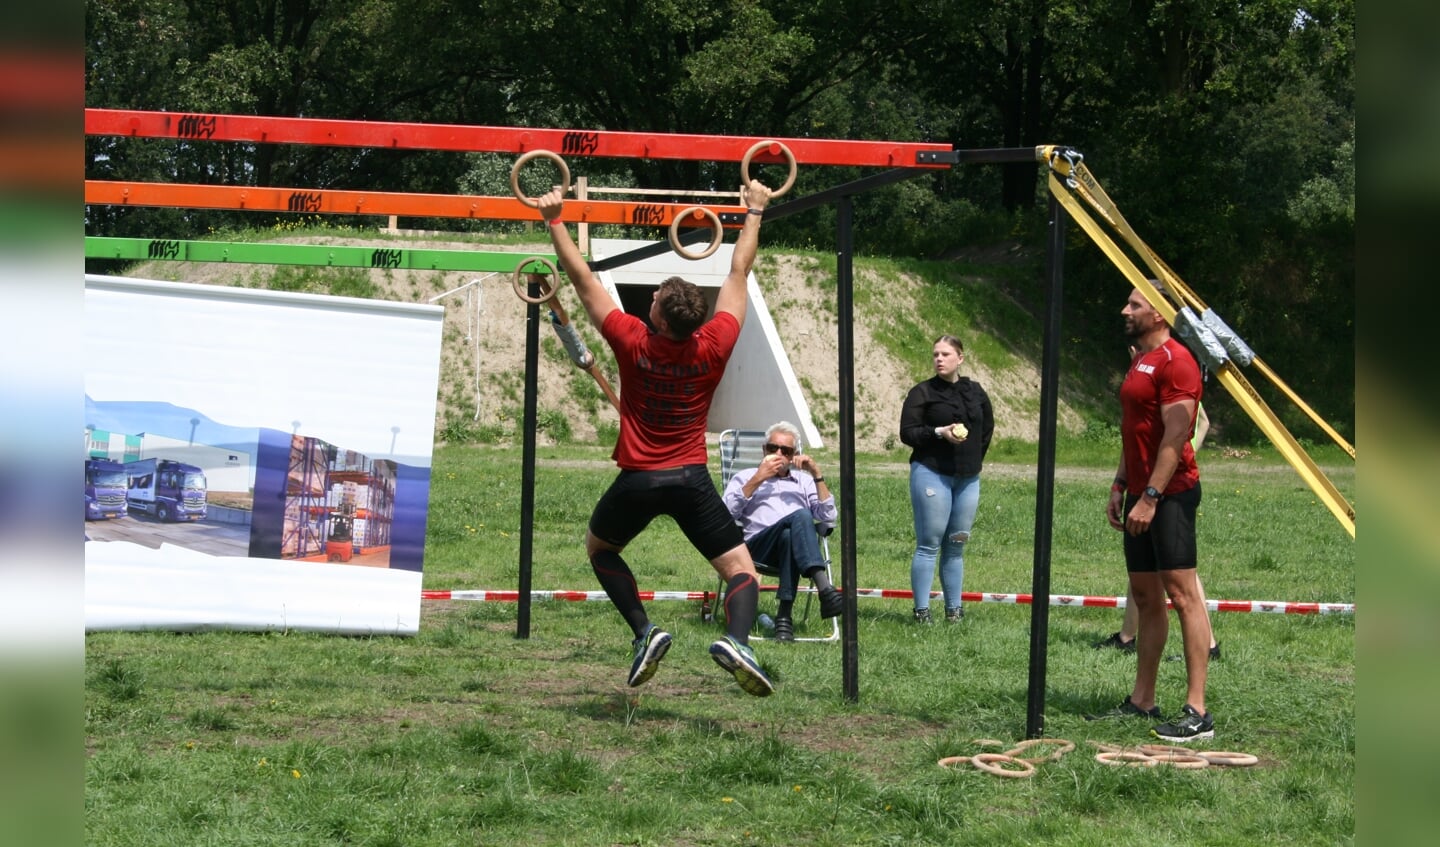 Deelnemers moesten diverse obstacles overwinnen. 